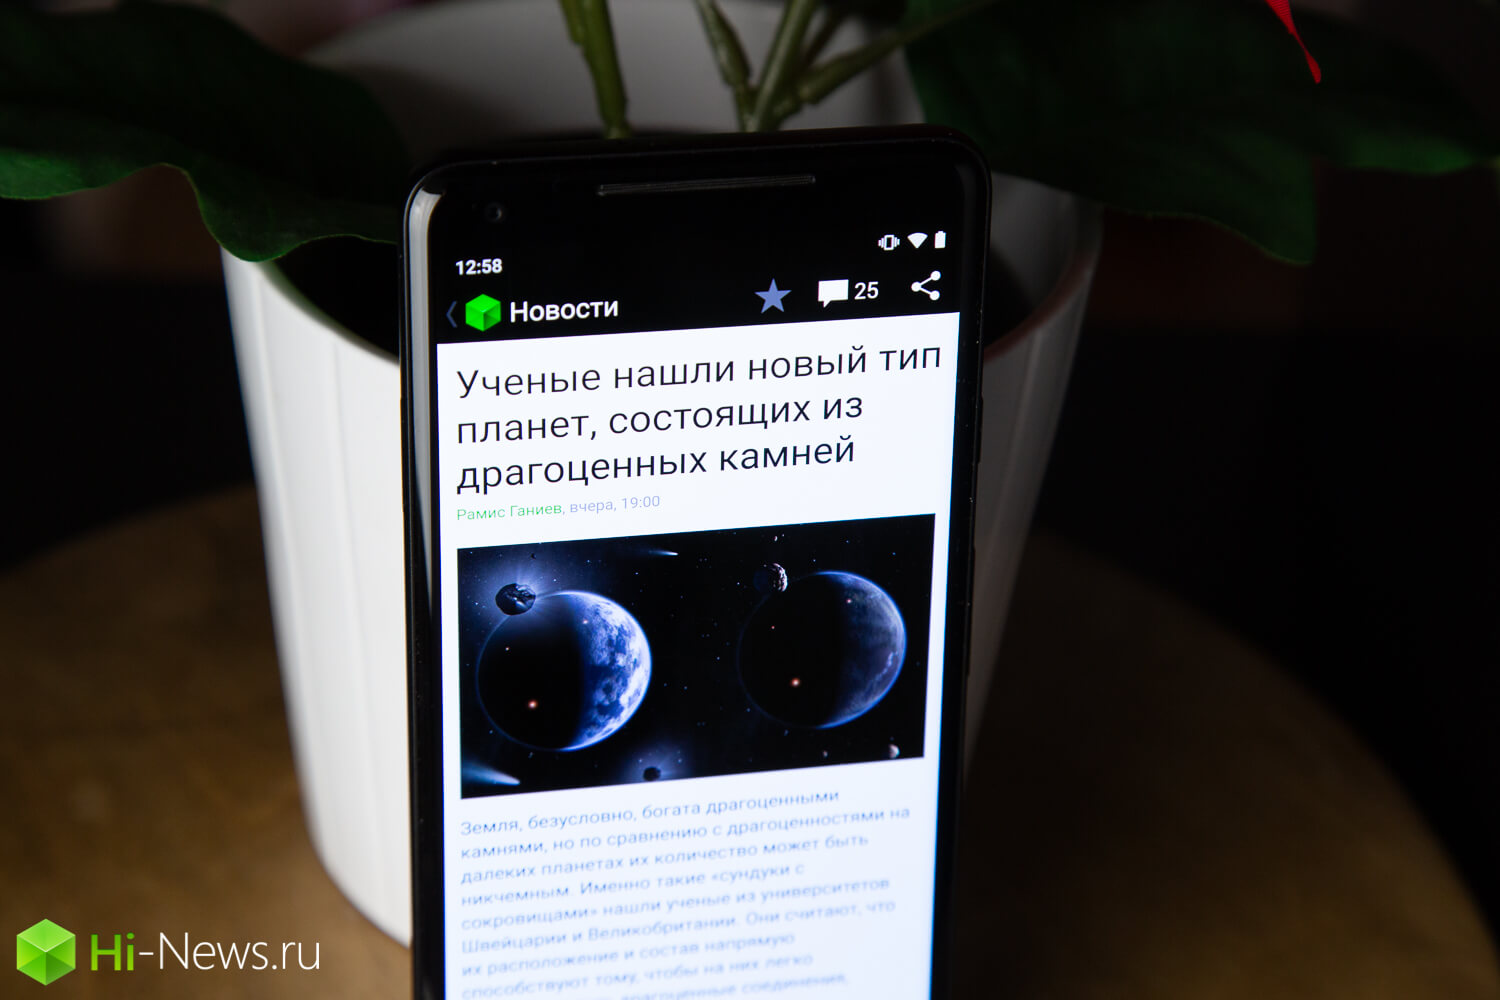 How to fix the app Hi-News.ru